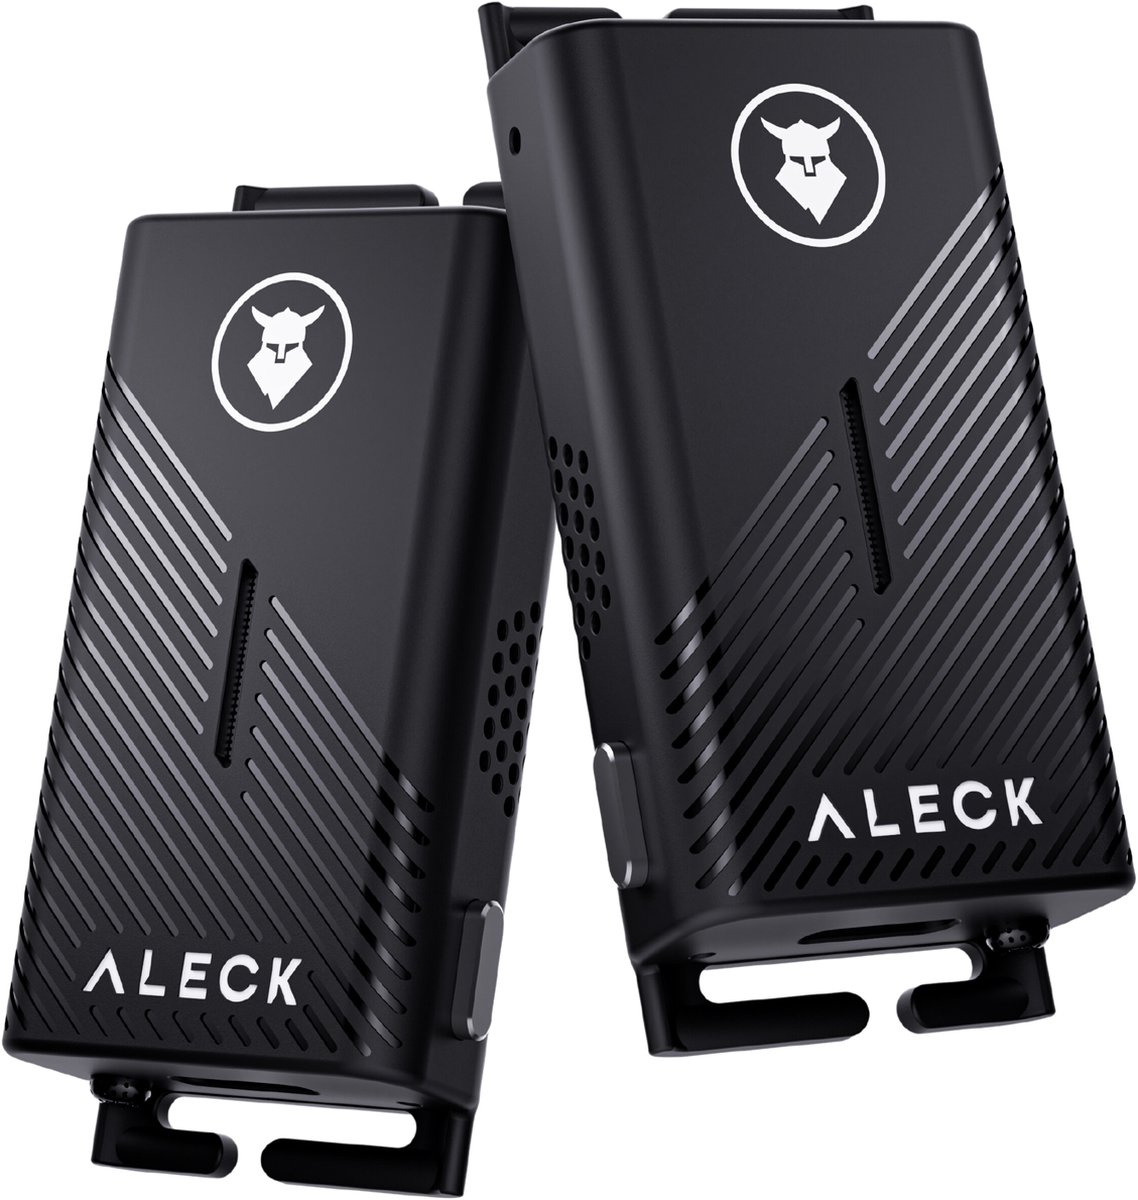 Aleck Punks draadloze helmaudio en communicatie - 2 stuks Zwart | near-ear | open-ear | sporthoofdtelefoon | walkie talkie | cycling | fietsen | audio | bluetooth | speaker